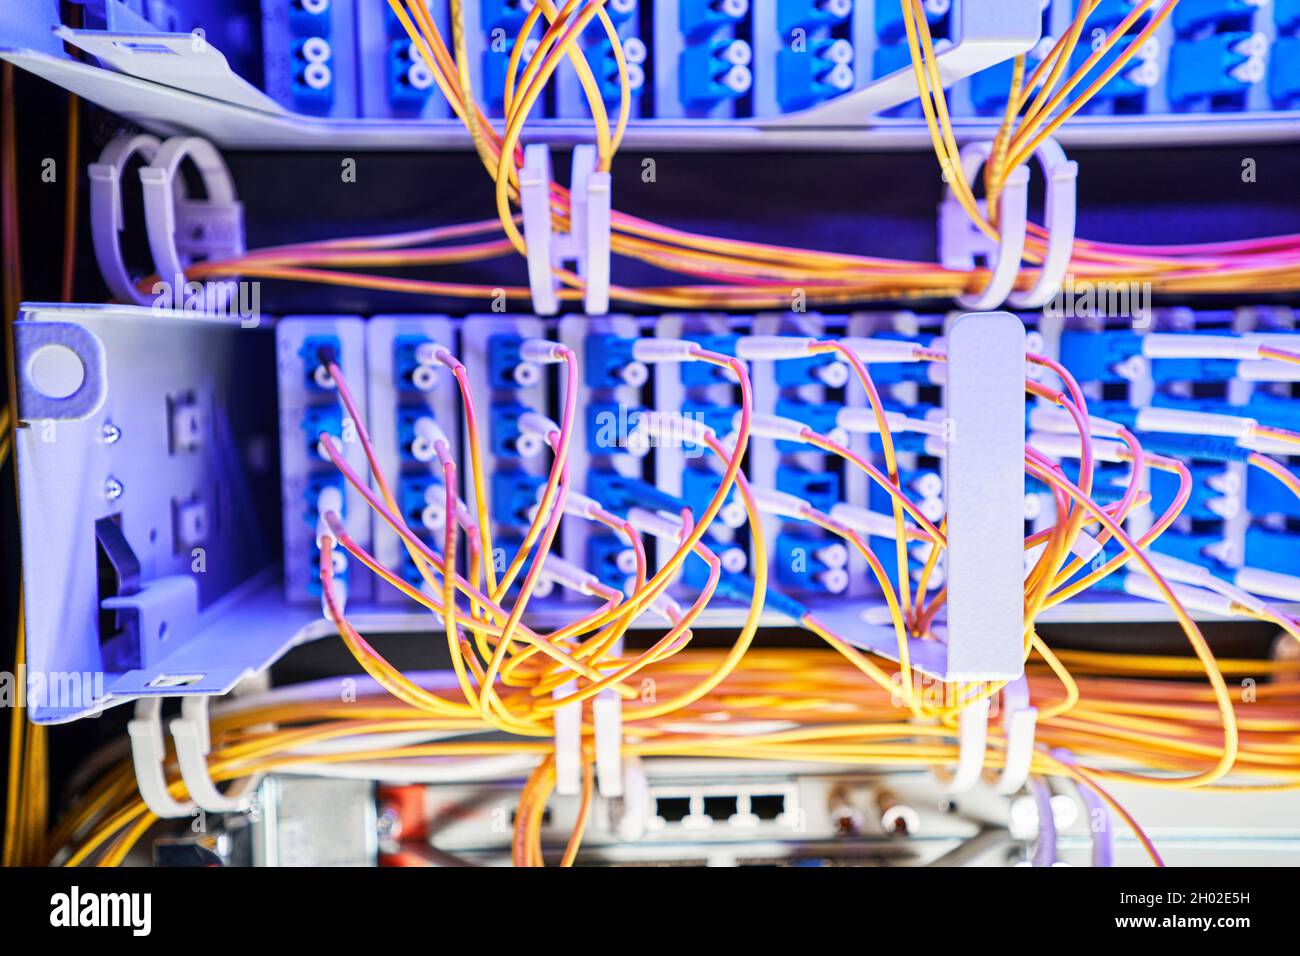 Kabelmanagement im Serverschrank mit Reißverschlüssen Stockfotografie -  Alamy